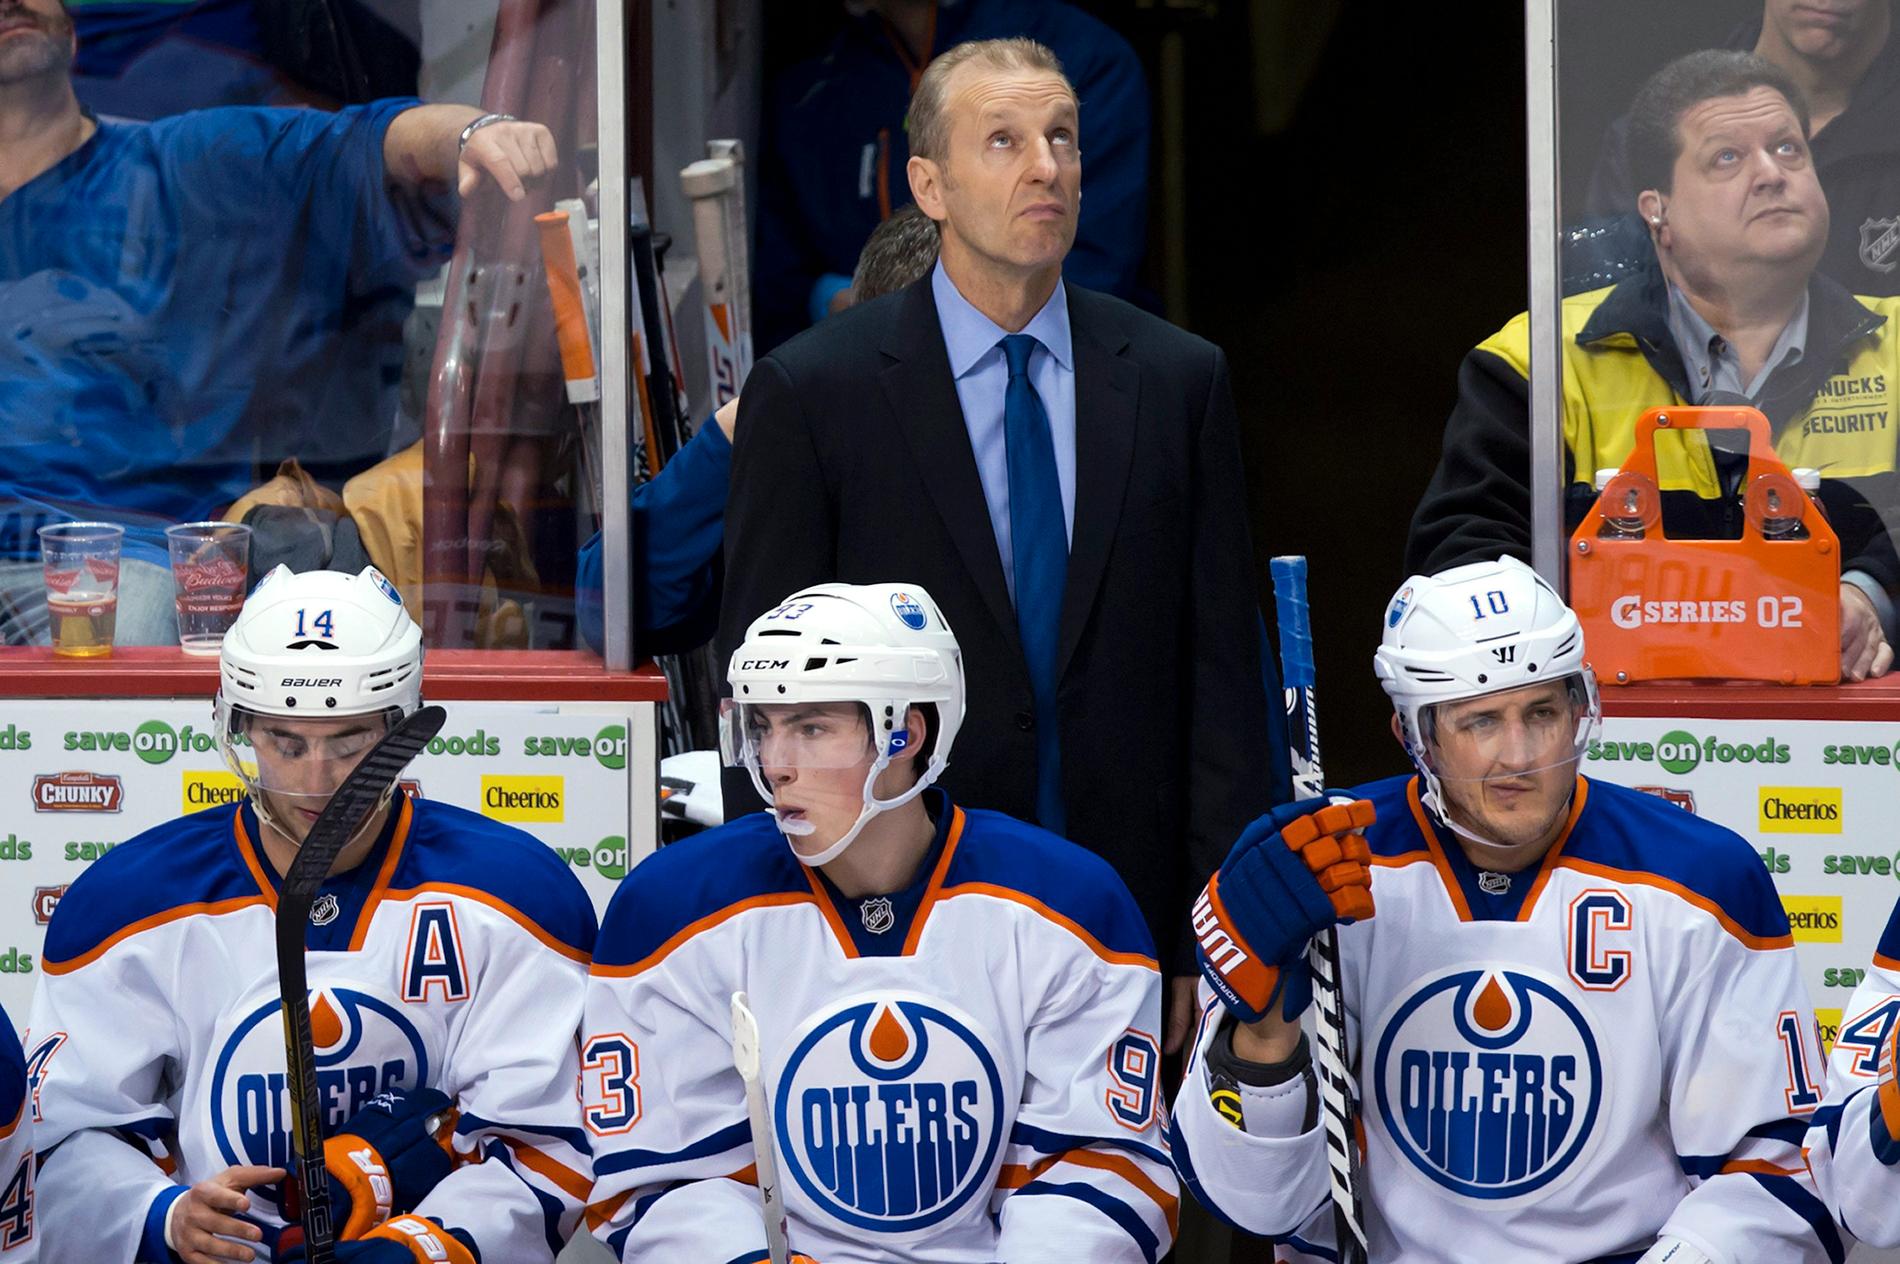 2012–2013 var Krueger head coach för Edmonton Oilers.